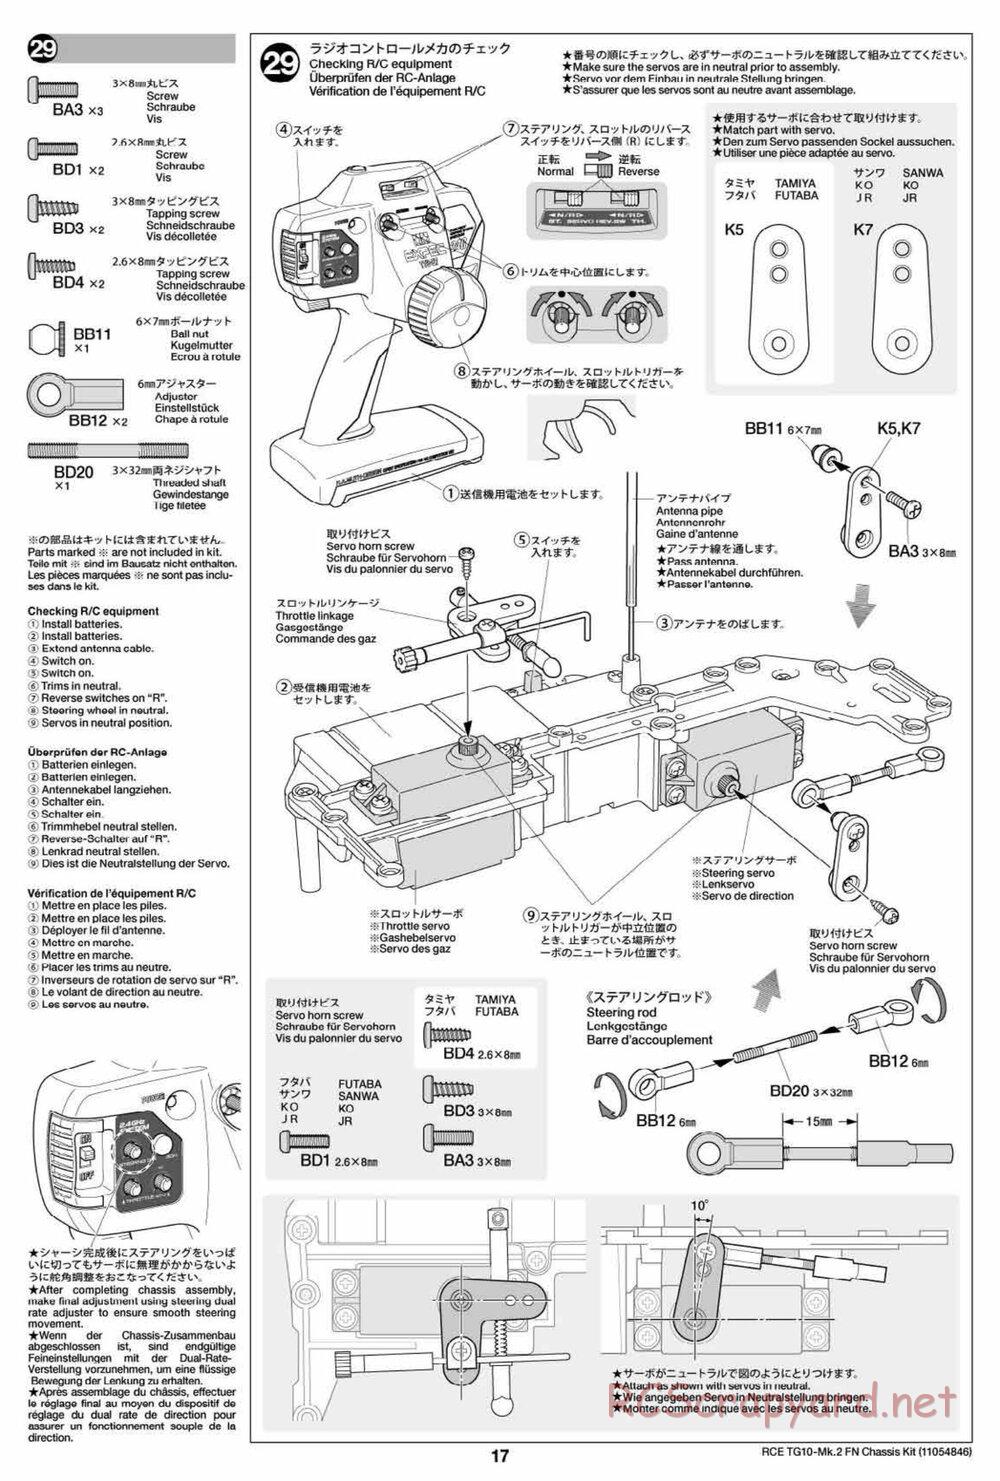 Tamiya - TG10 Mk.2 FN Chassis - Manual - Page 17